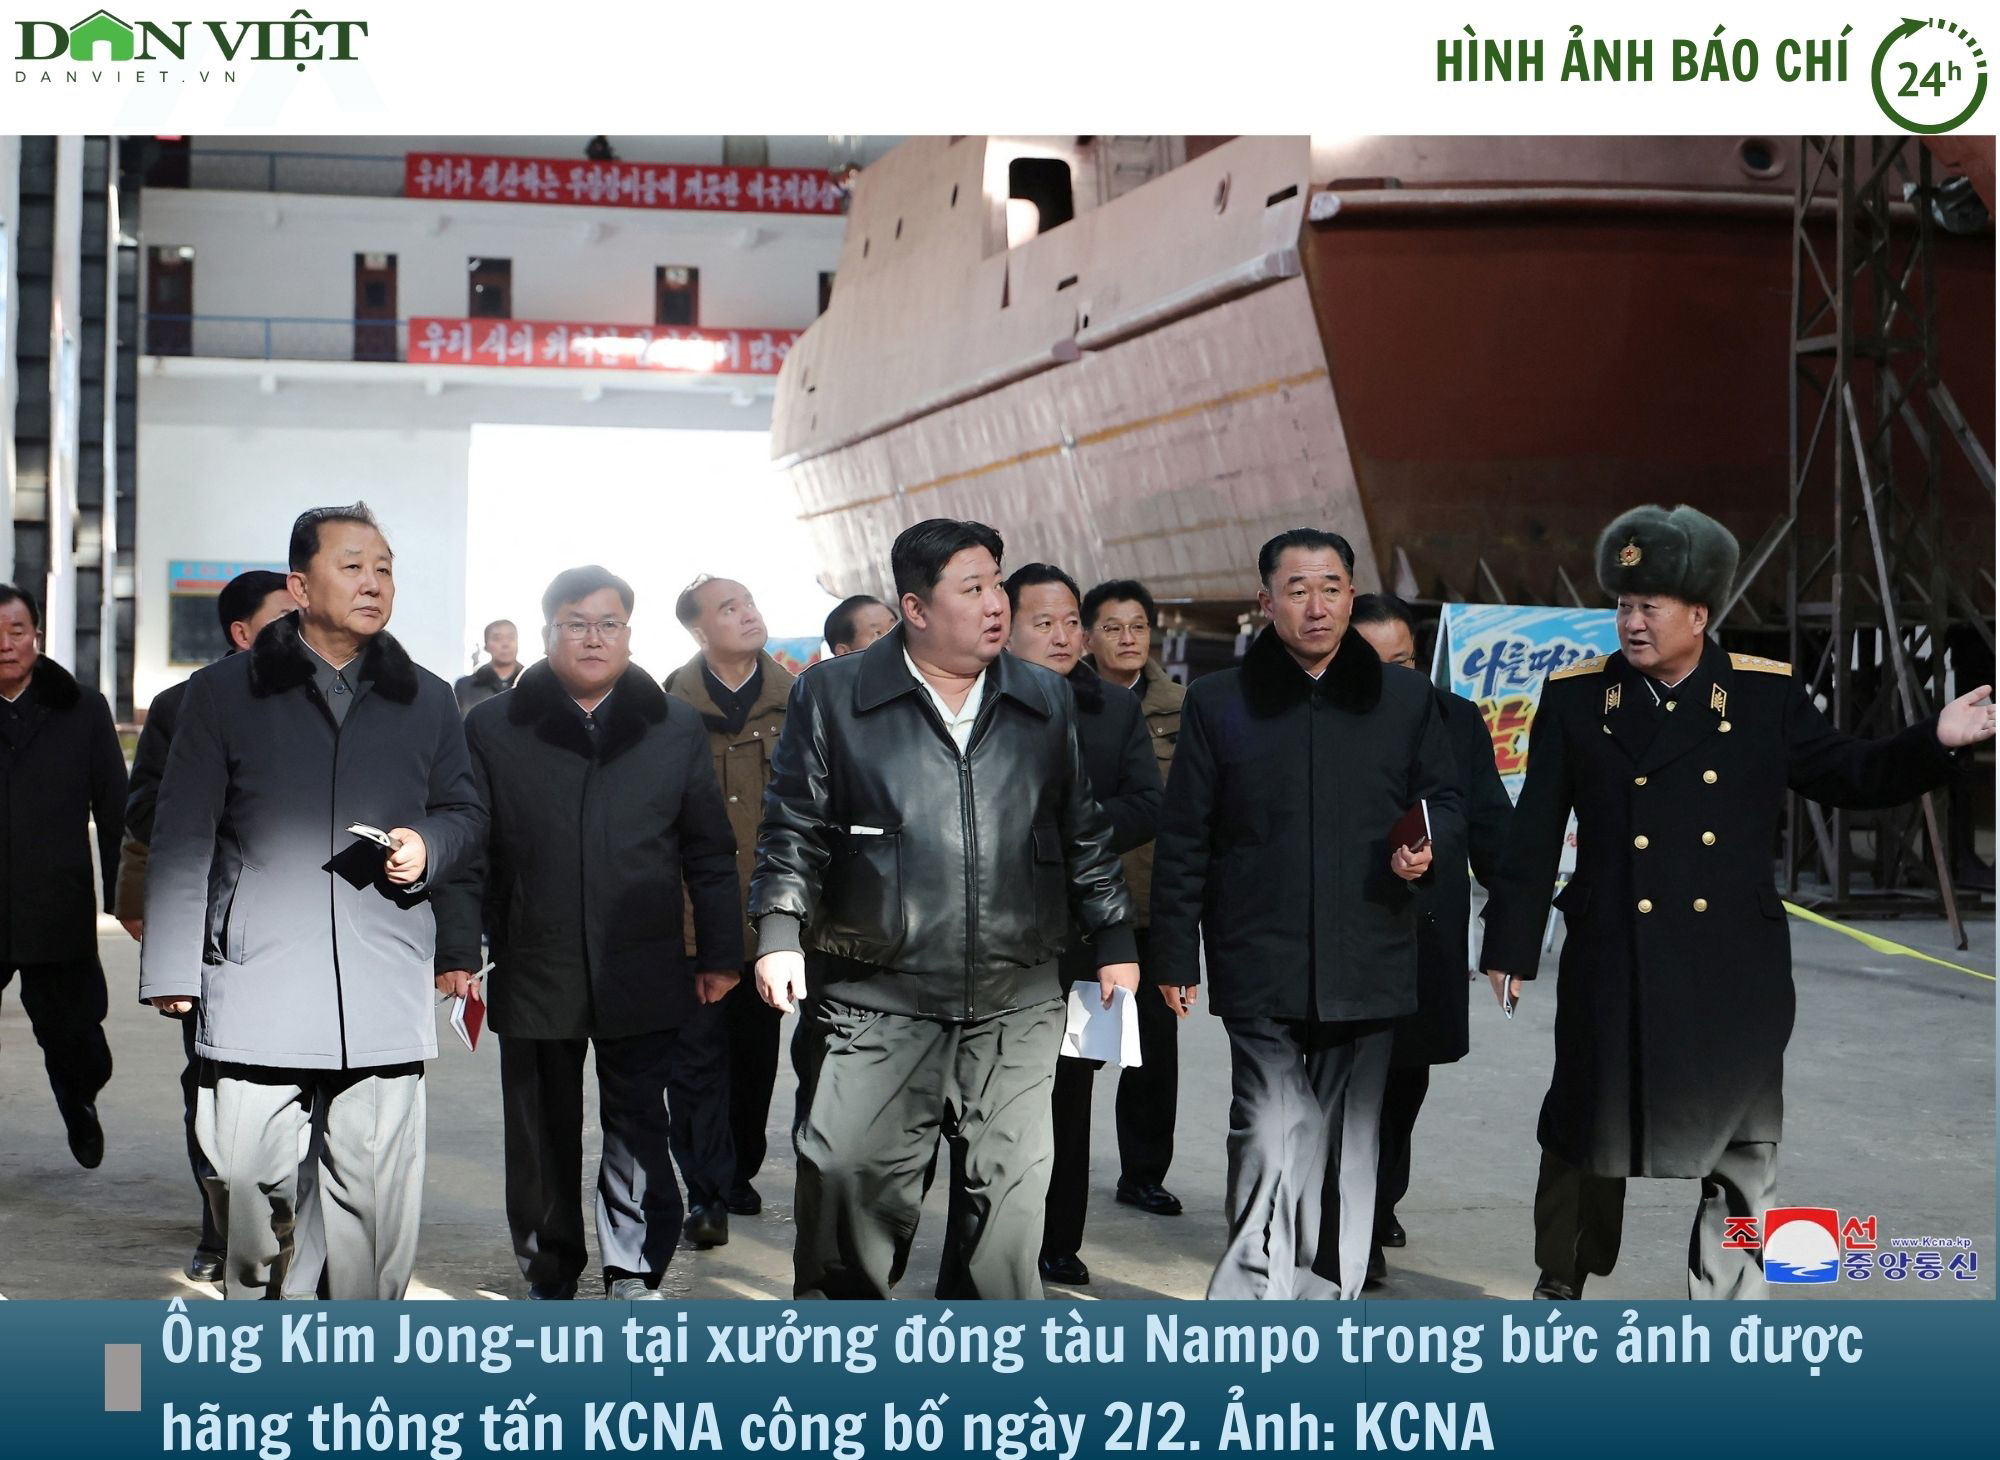 Hình ảnh báo chí 24h: Ông Kim Jong-un kiểm tra xưởng đóng tàu chiến, "chuẩn bị cho xung đột"- Ảnh 1.